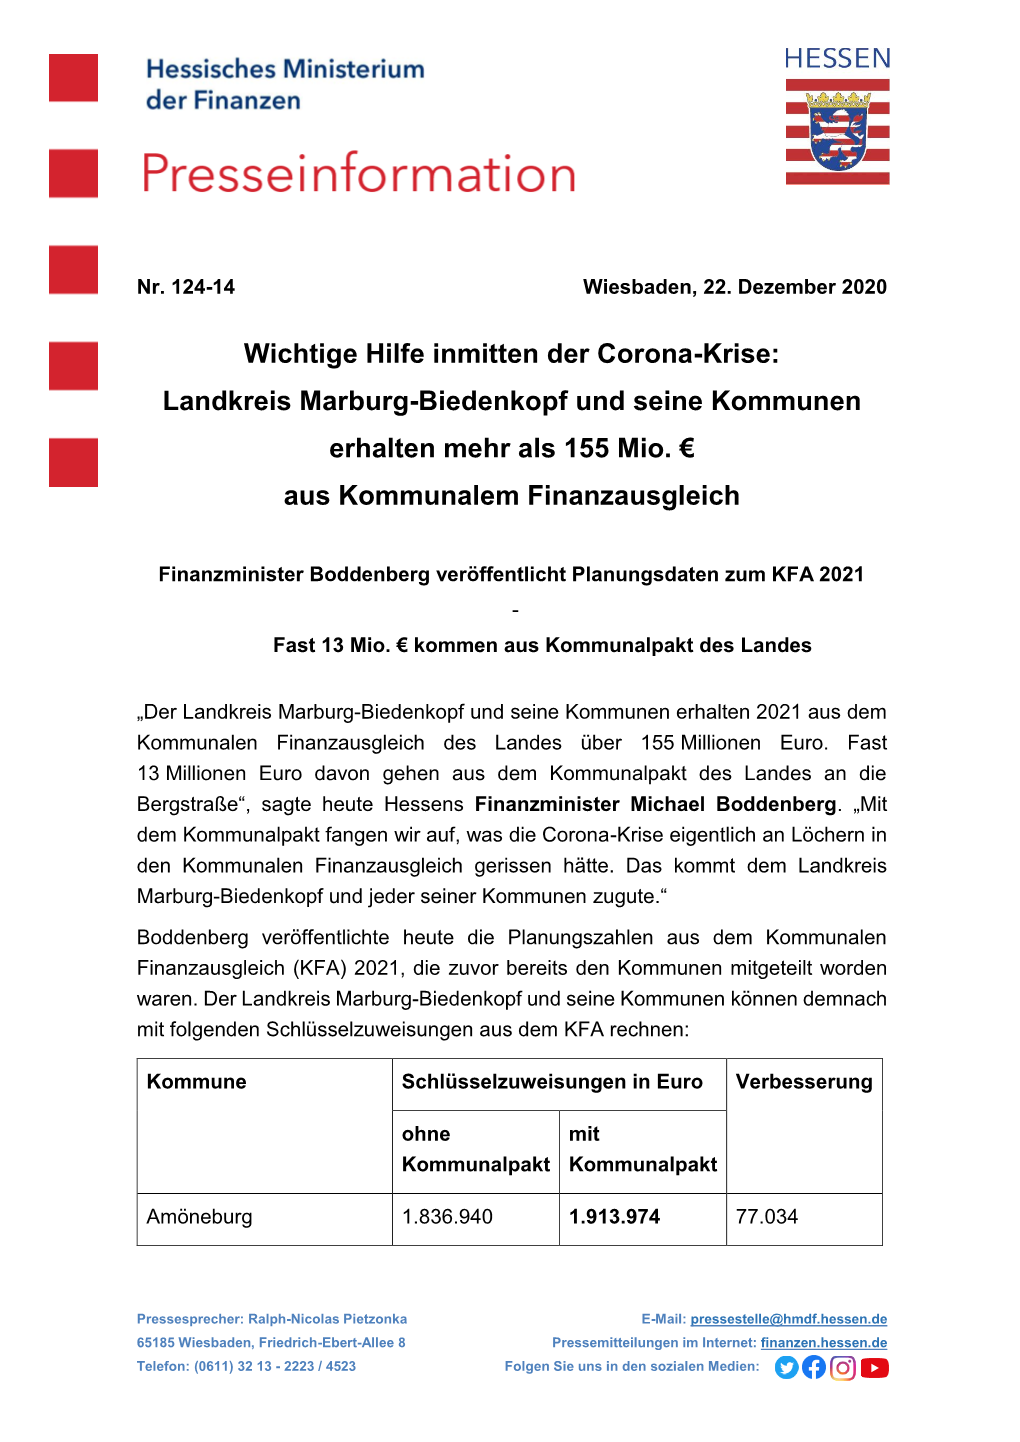 Wichtige Hilfe Inmitten Der Corona-Krise: Landkreis Marburg-Biedenkopf Und Seine Kommunen Erhalten Mehr Als 155 Mio